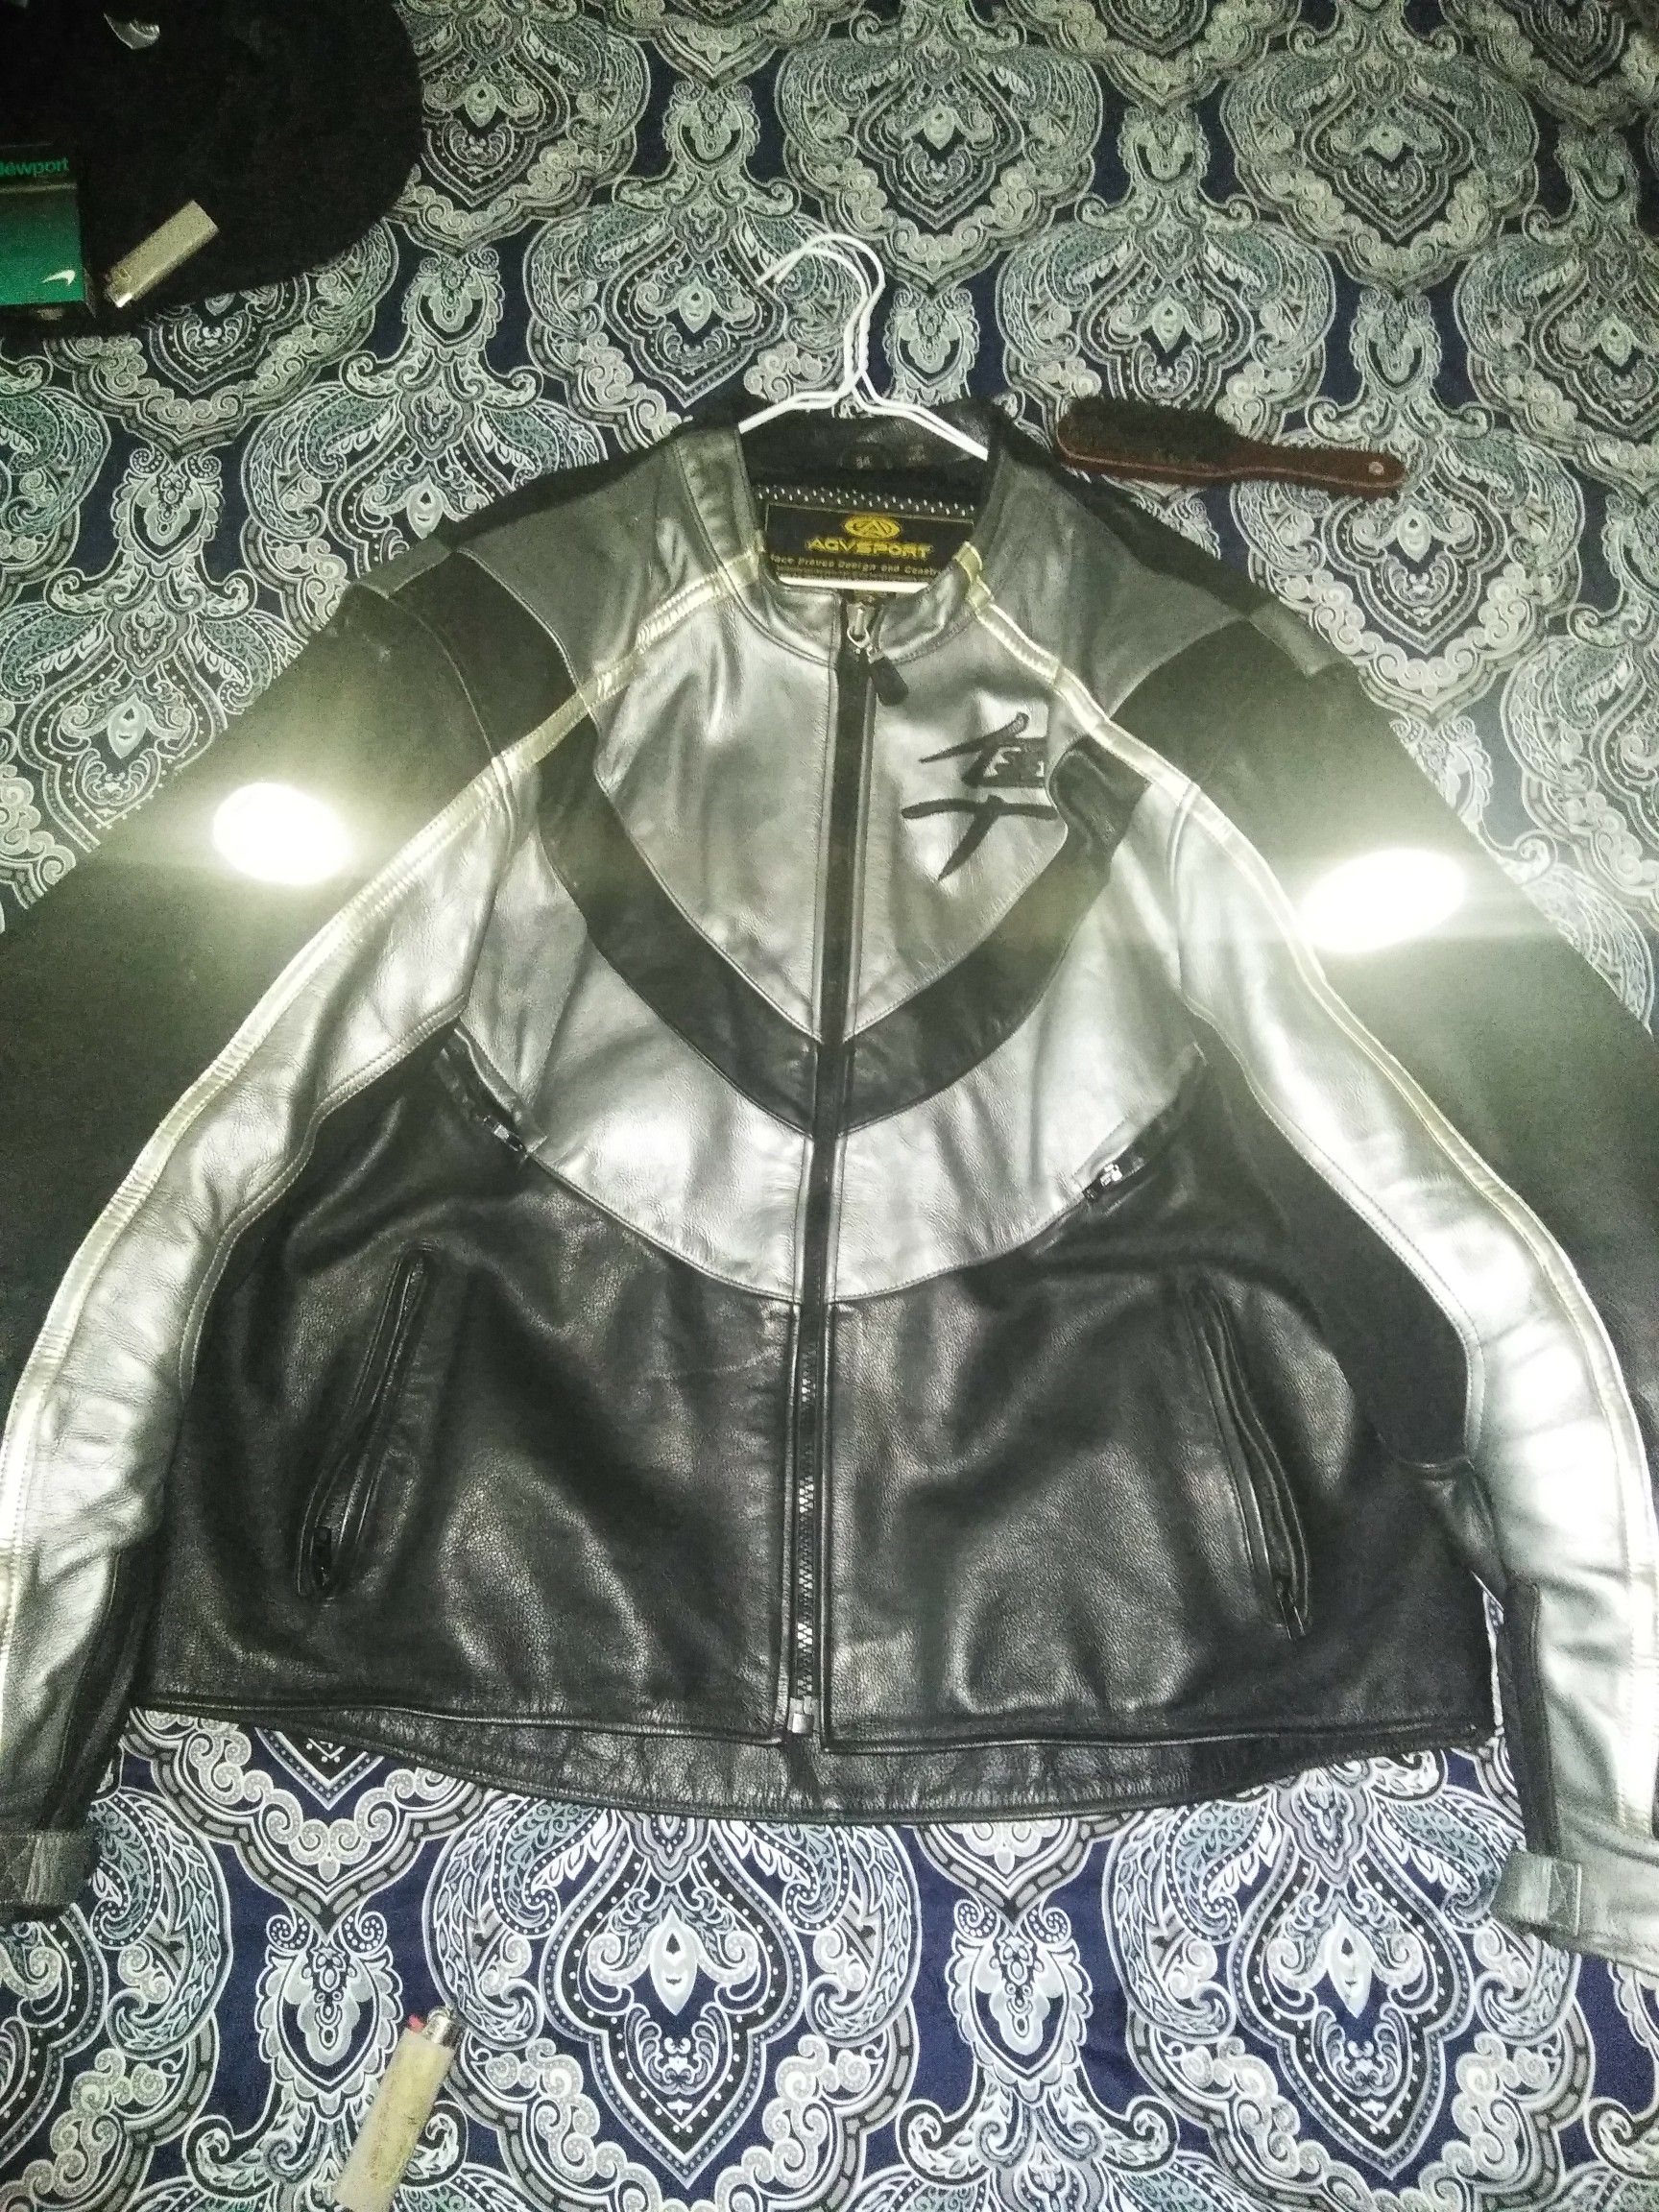 Full leather fully padded Suzuki motor cycle jacket size 54.